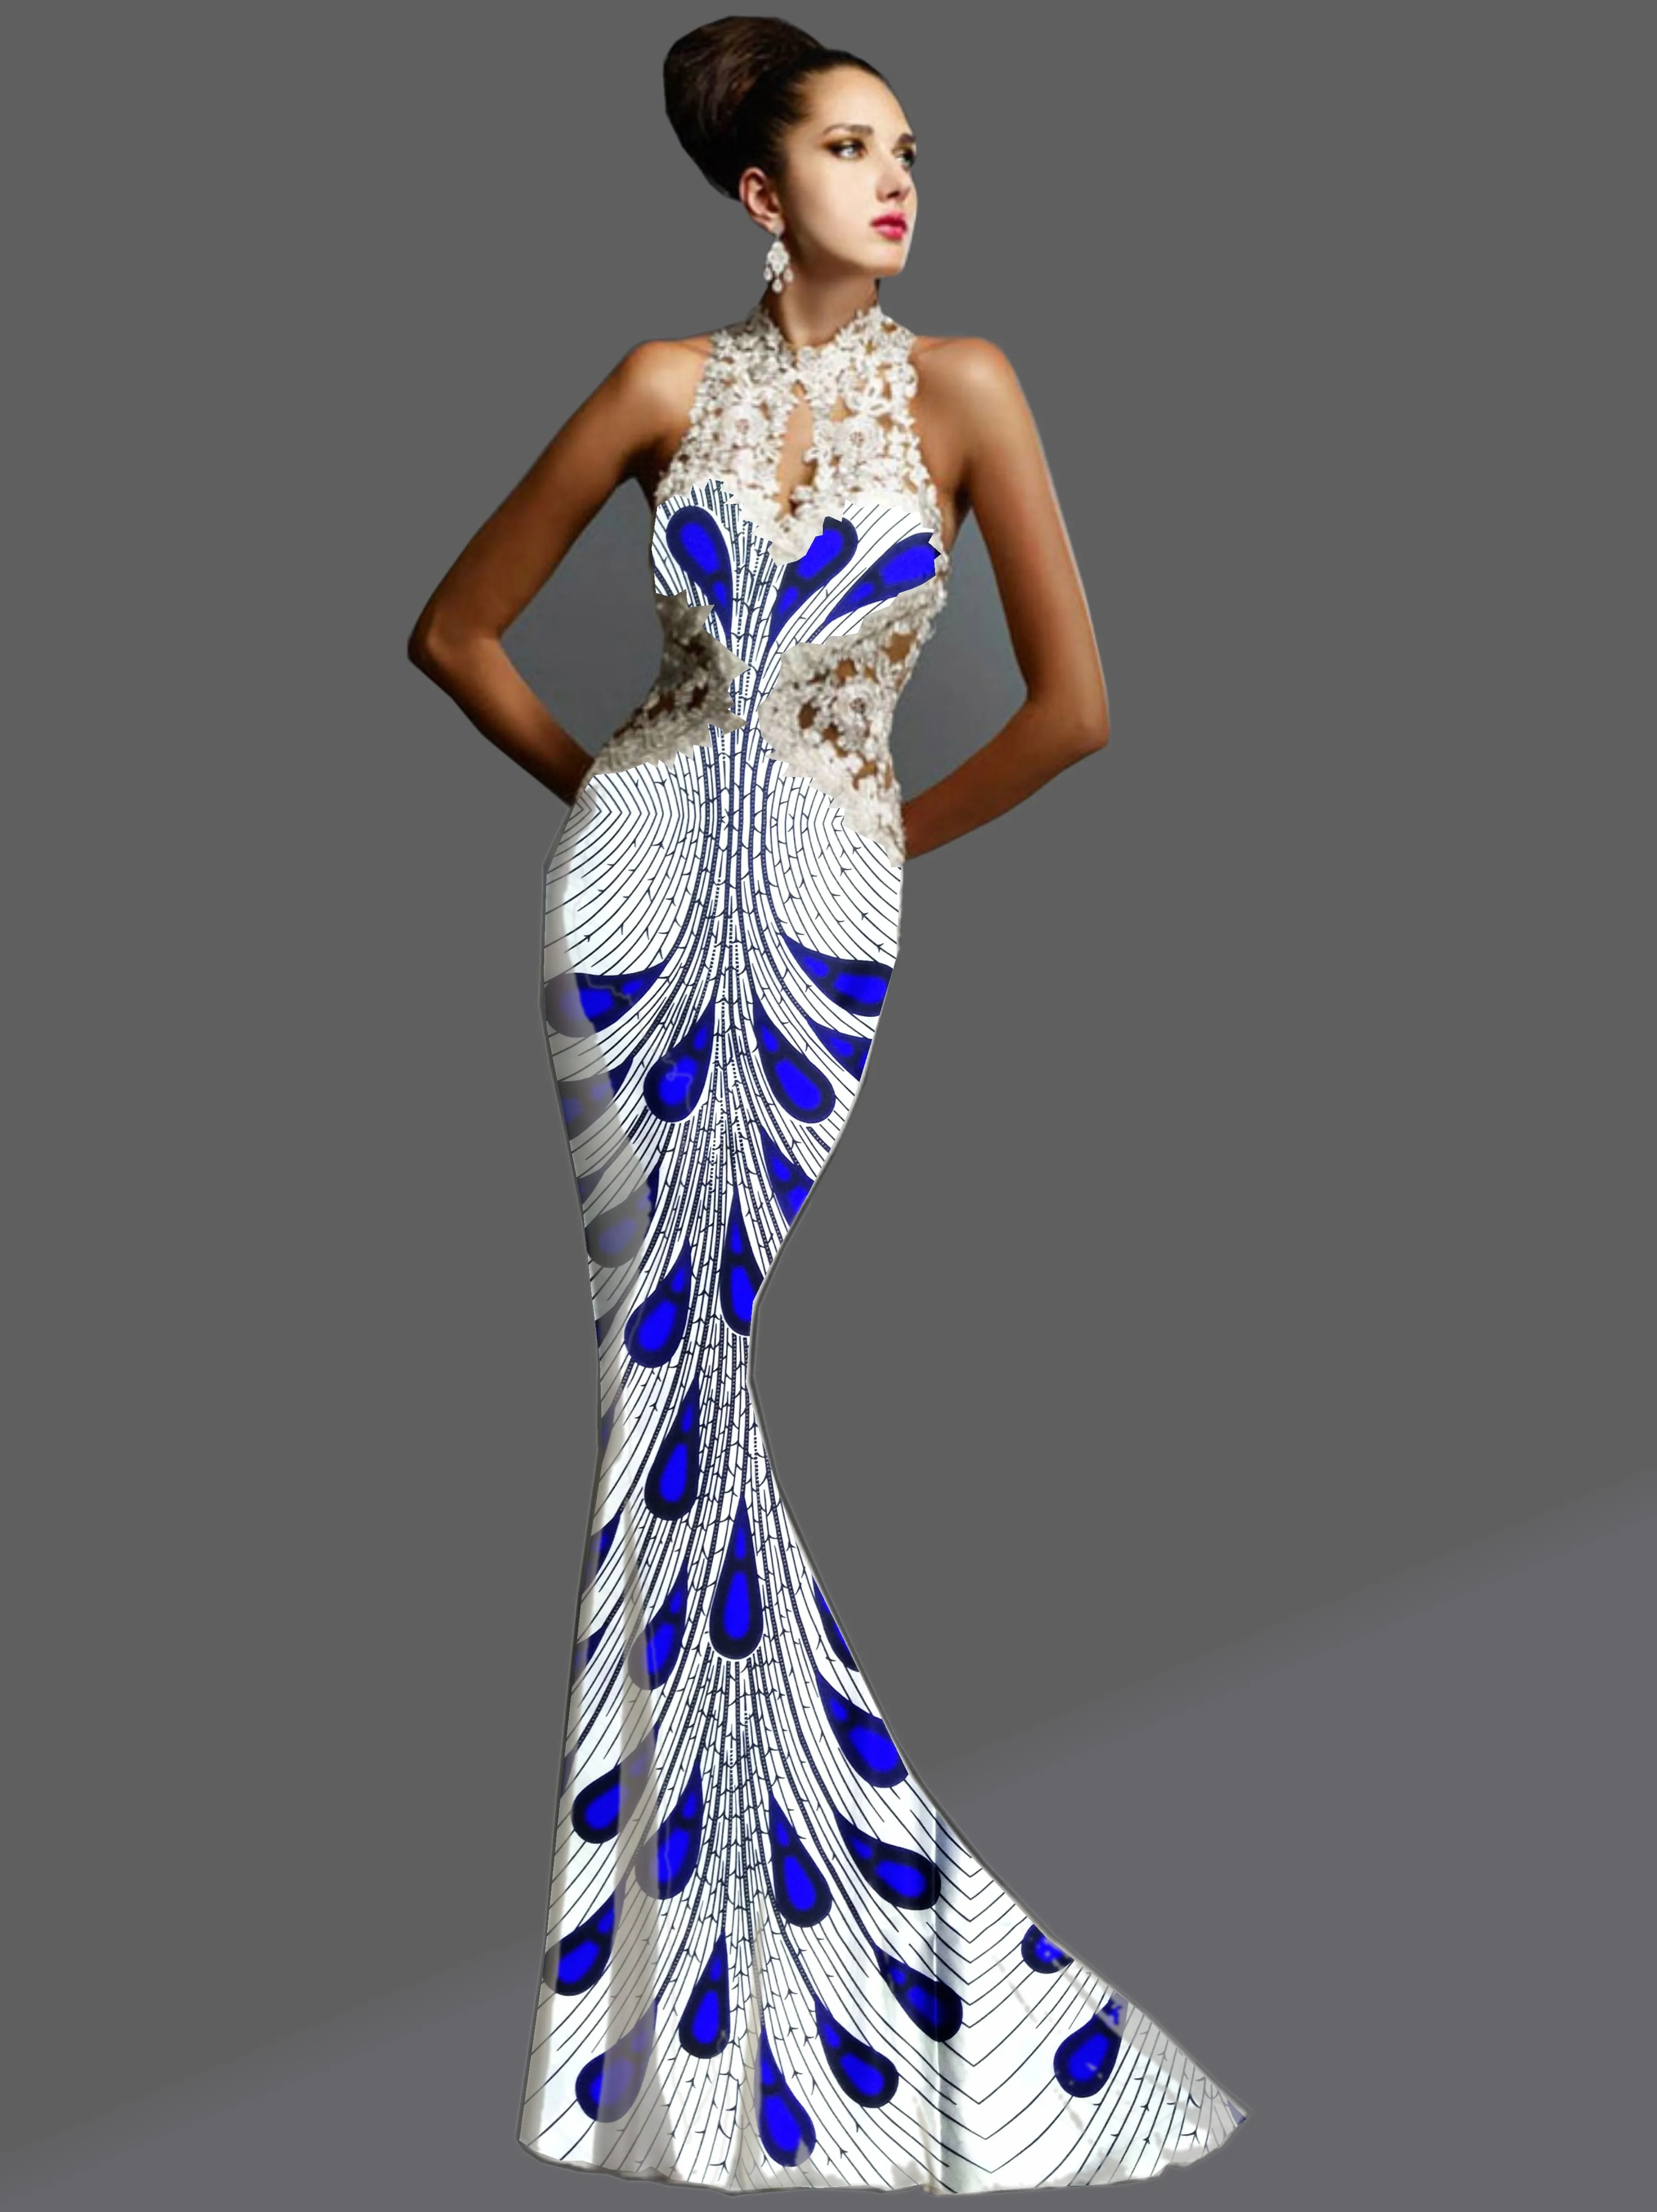 LIULANZHI африканская ткань белая атласная ткань с синим узором Дизайн Новое поступление африканская атласная ткань для платья XDA01